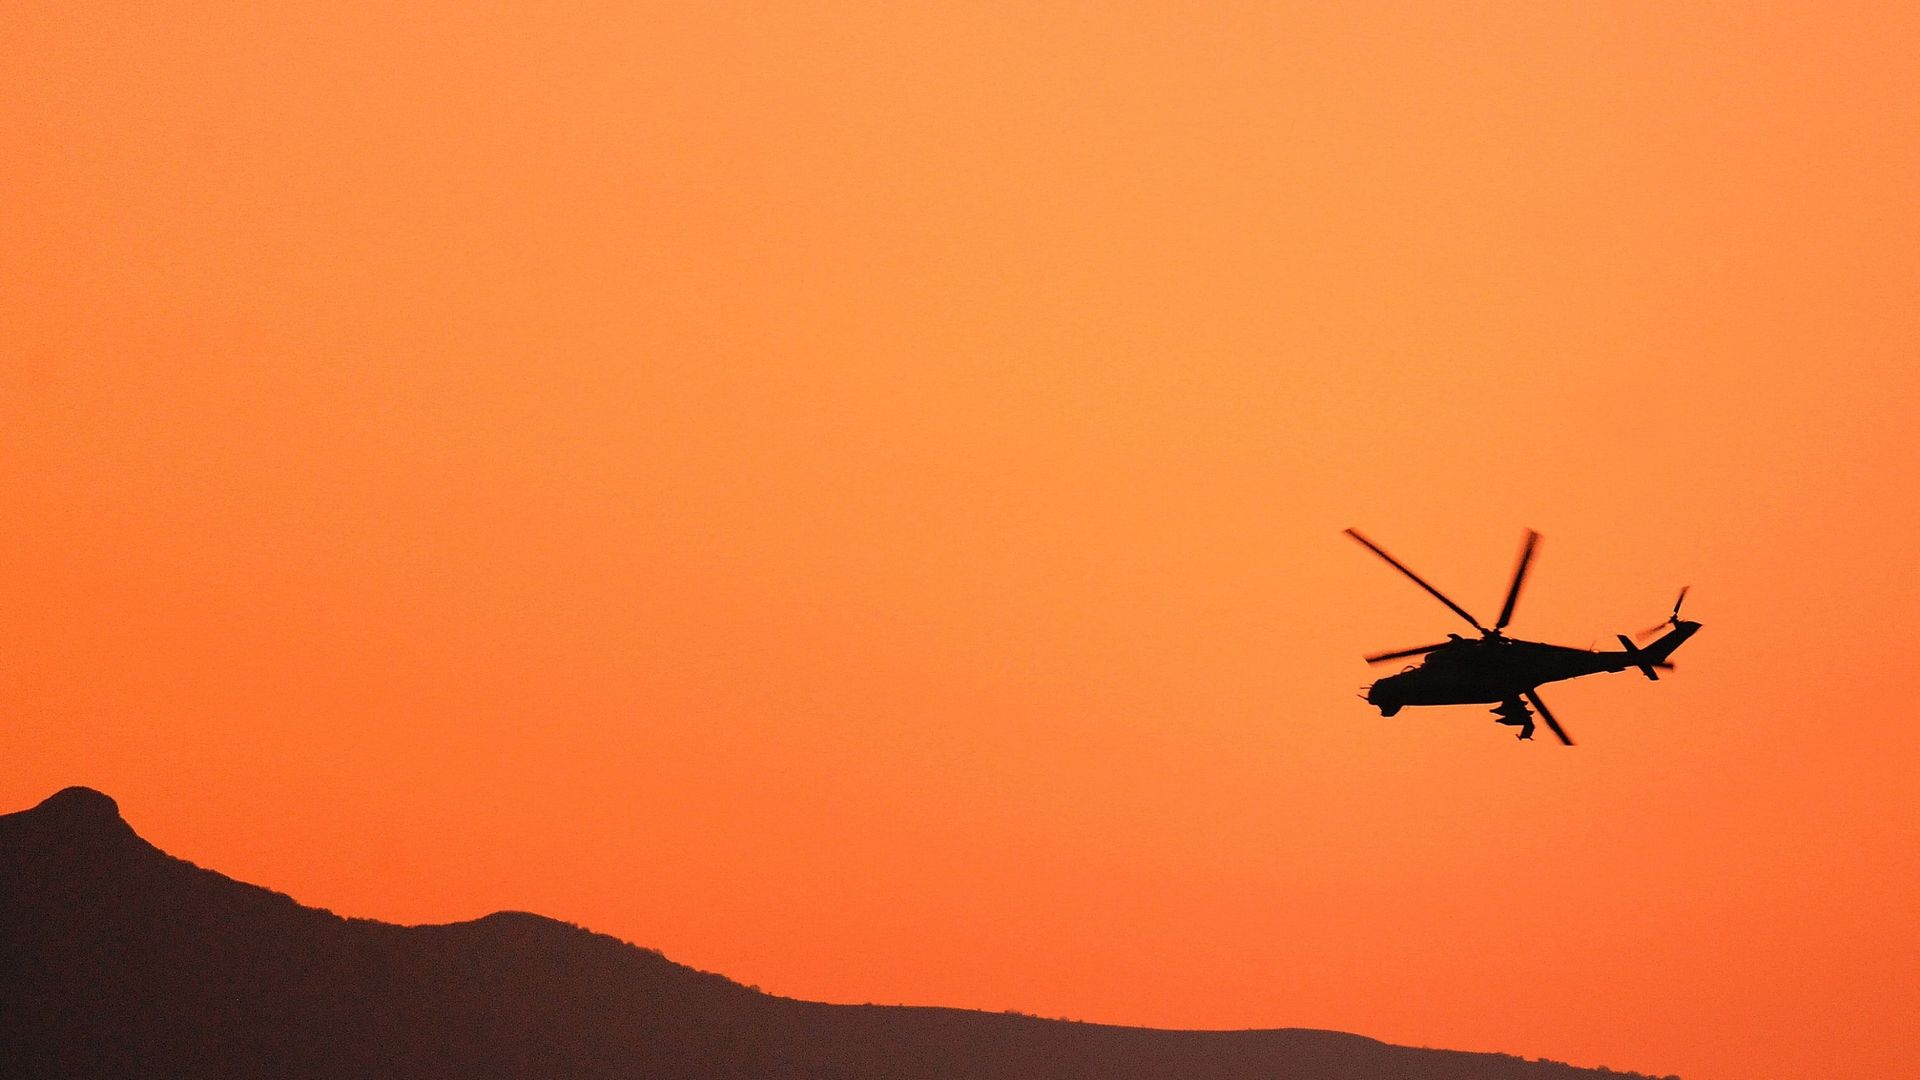 Spécialisé dans les hélicoptères de transport de très grande capacité, un entrepreneur belge est en détention préventive depuis 6 mois. La justice enquête sur ses activités liées au commerce de matériel militaire.